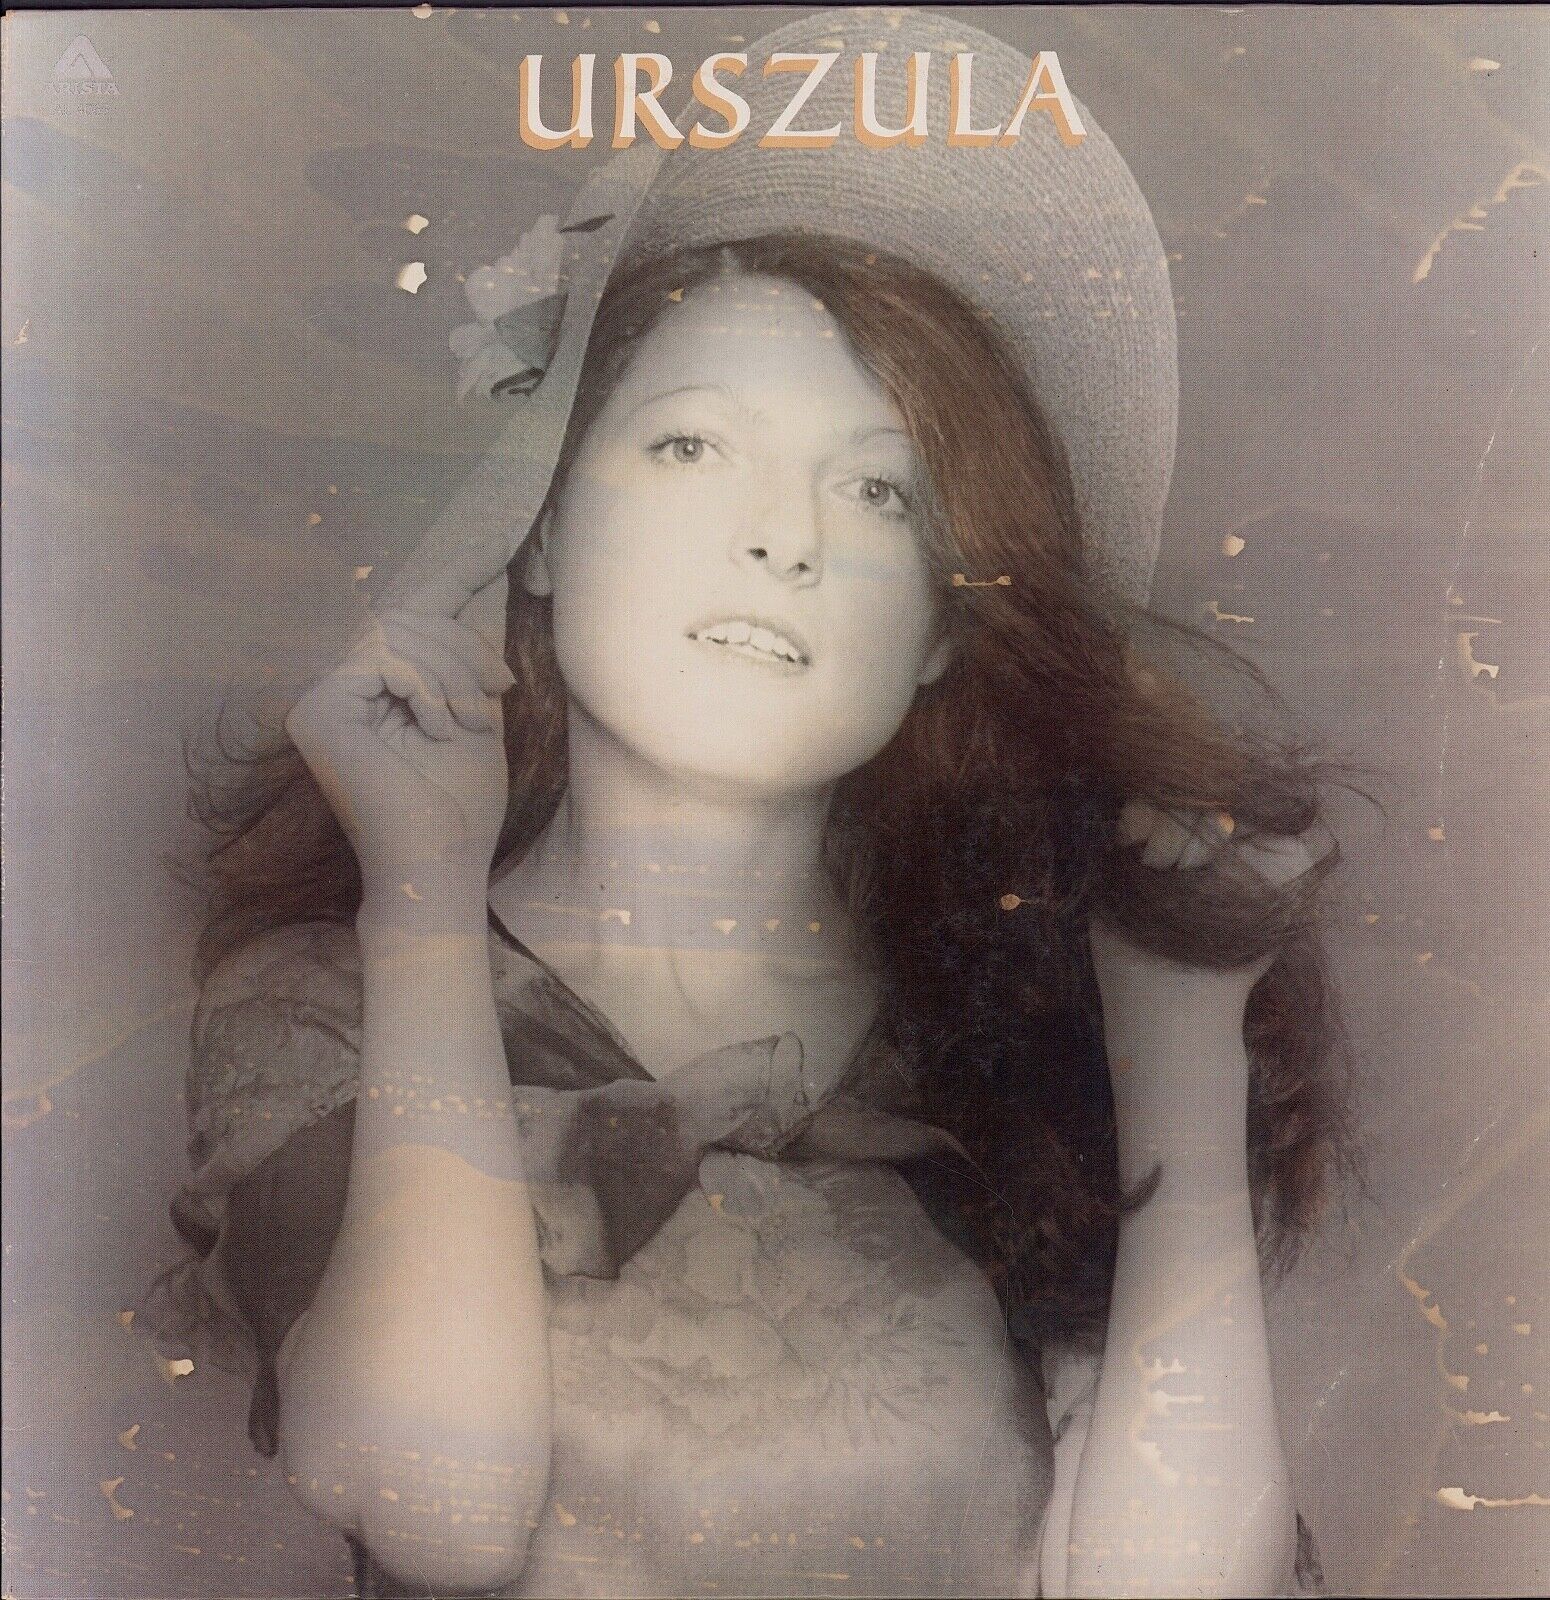 Urszula Dudziak ‎- Urszula Vinyl LP US